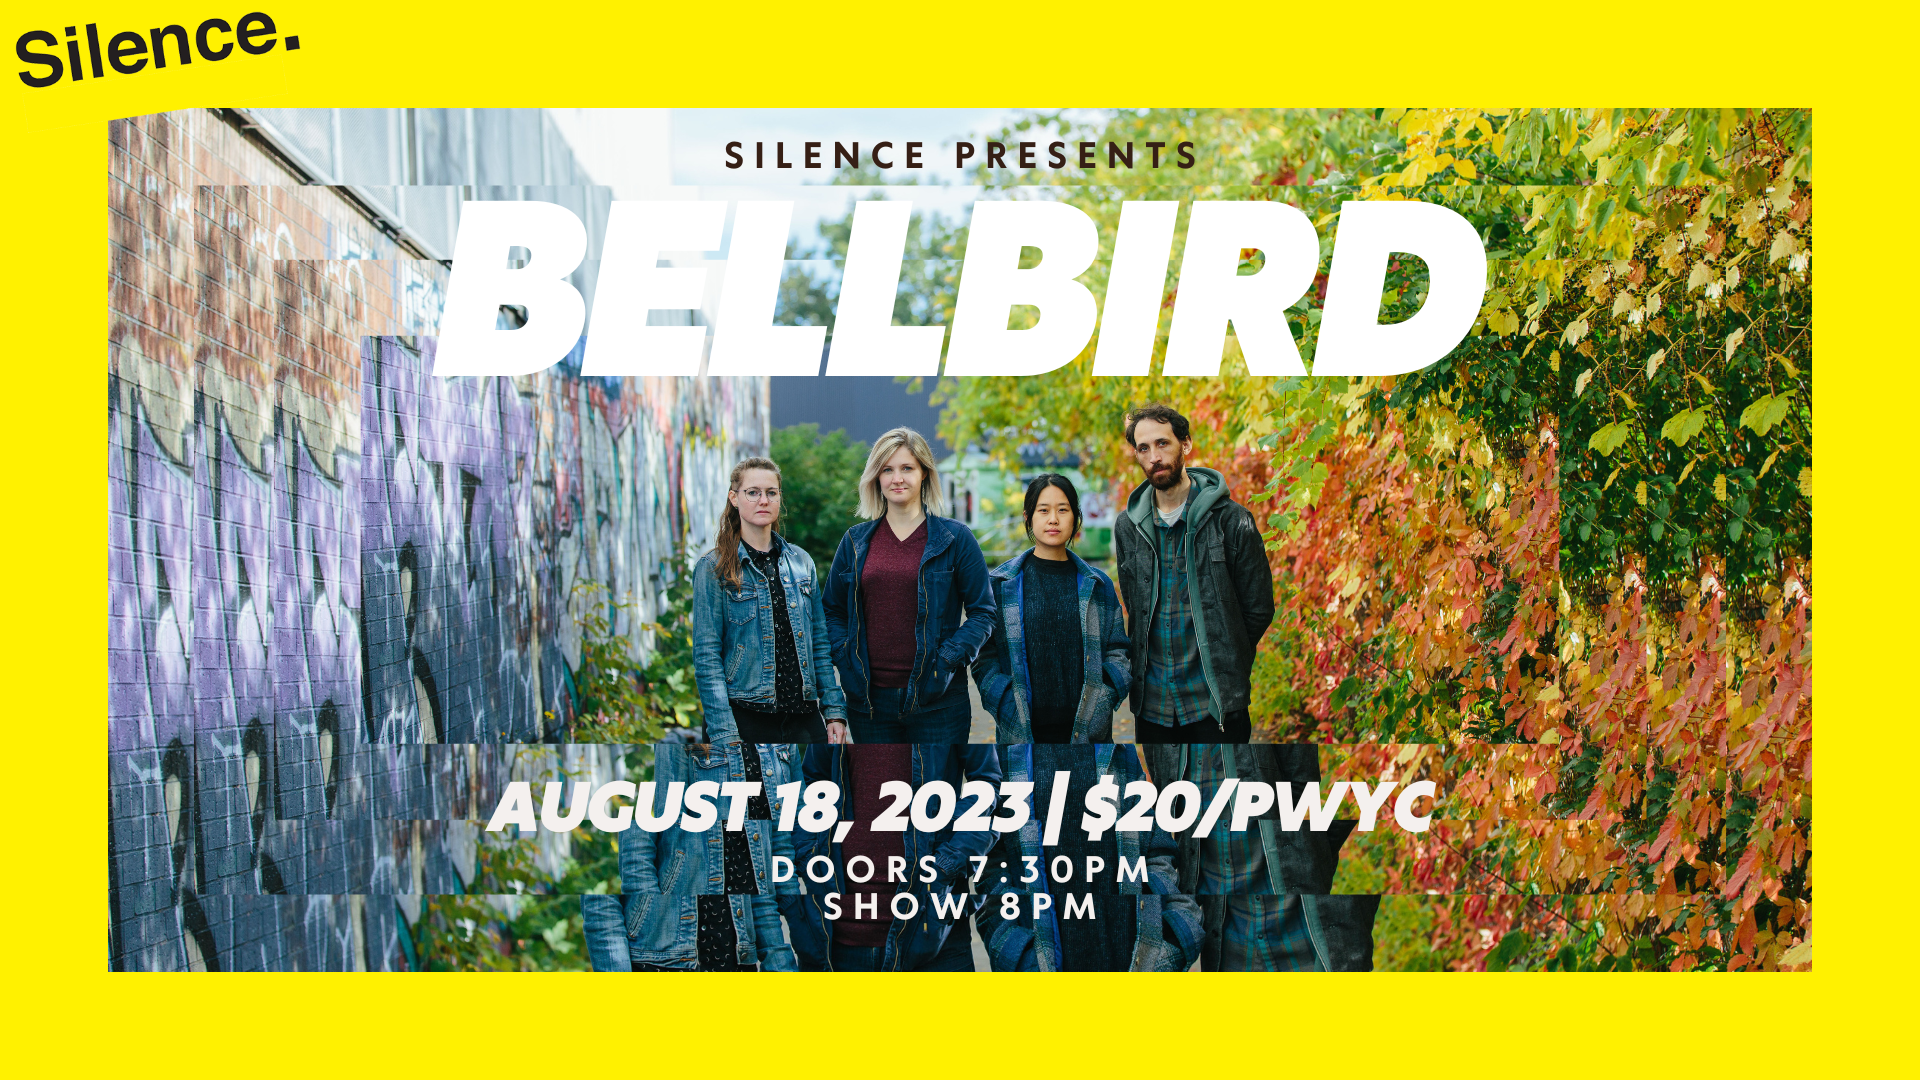 Aug 17 – Bellbird